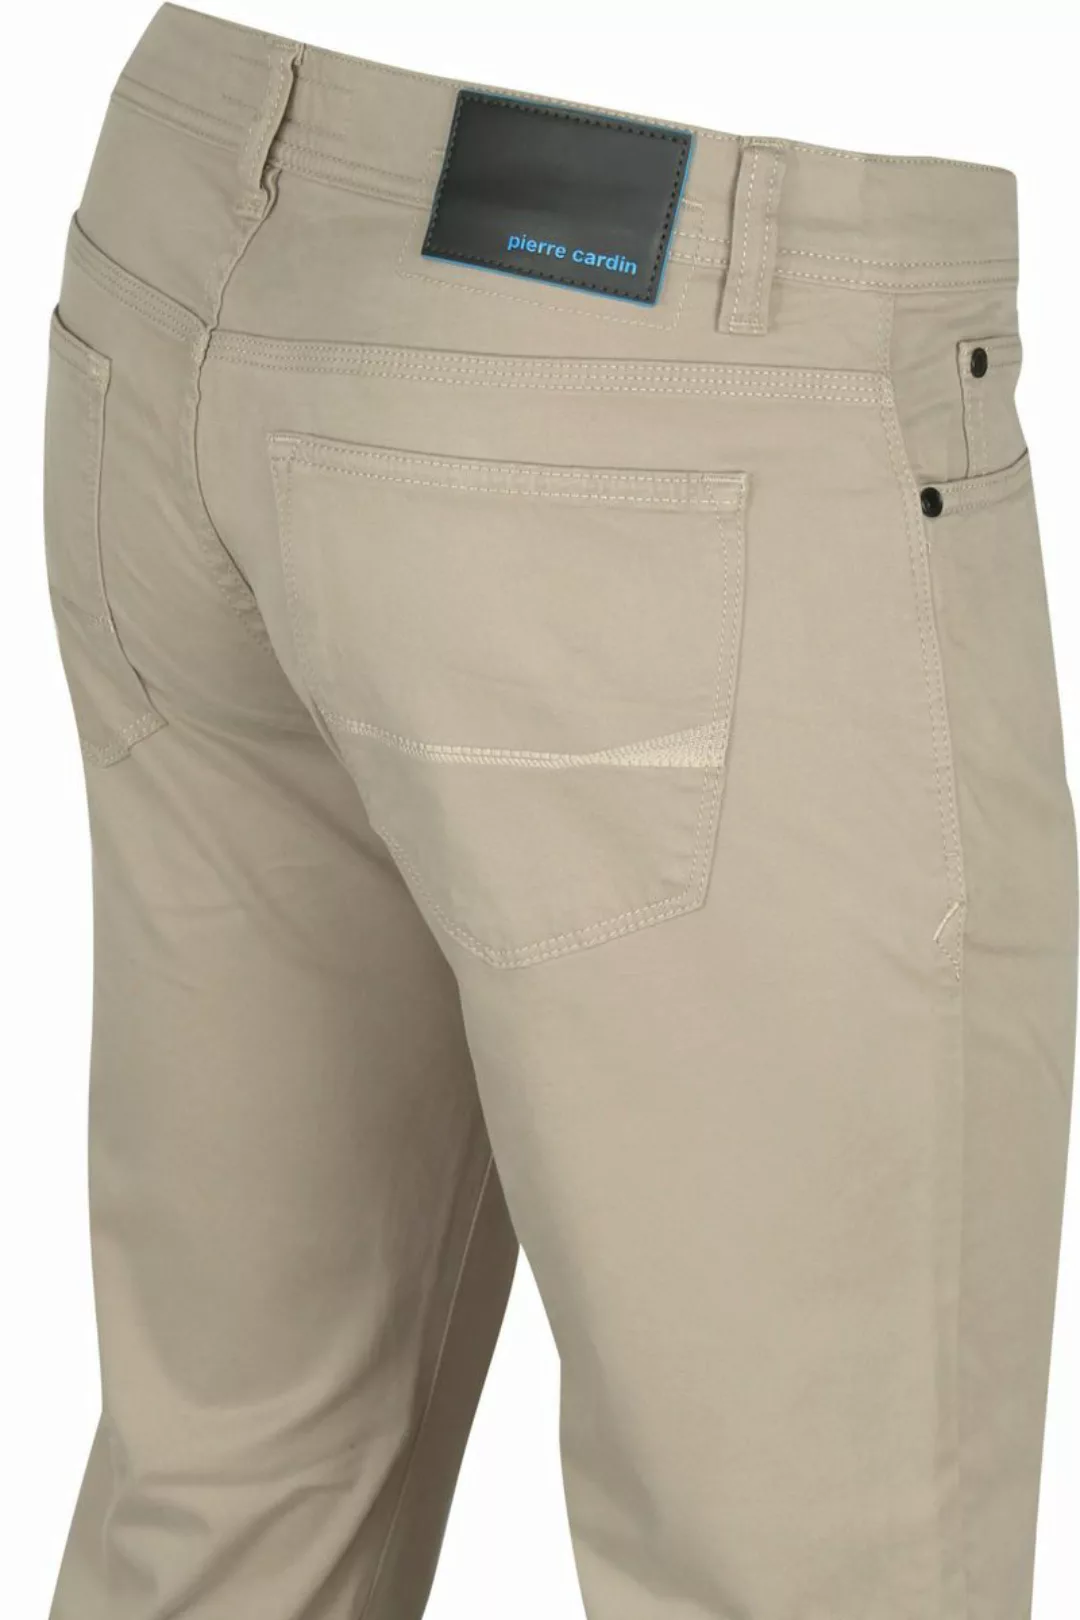 Pierre Cardin Antibes 5 Pocket Hose Khaki - Größe W 36 - L 32 günstig online kaufen